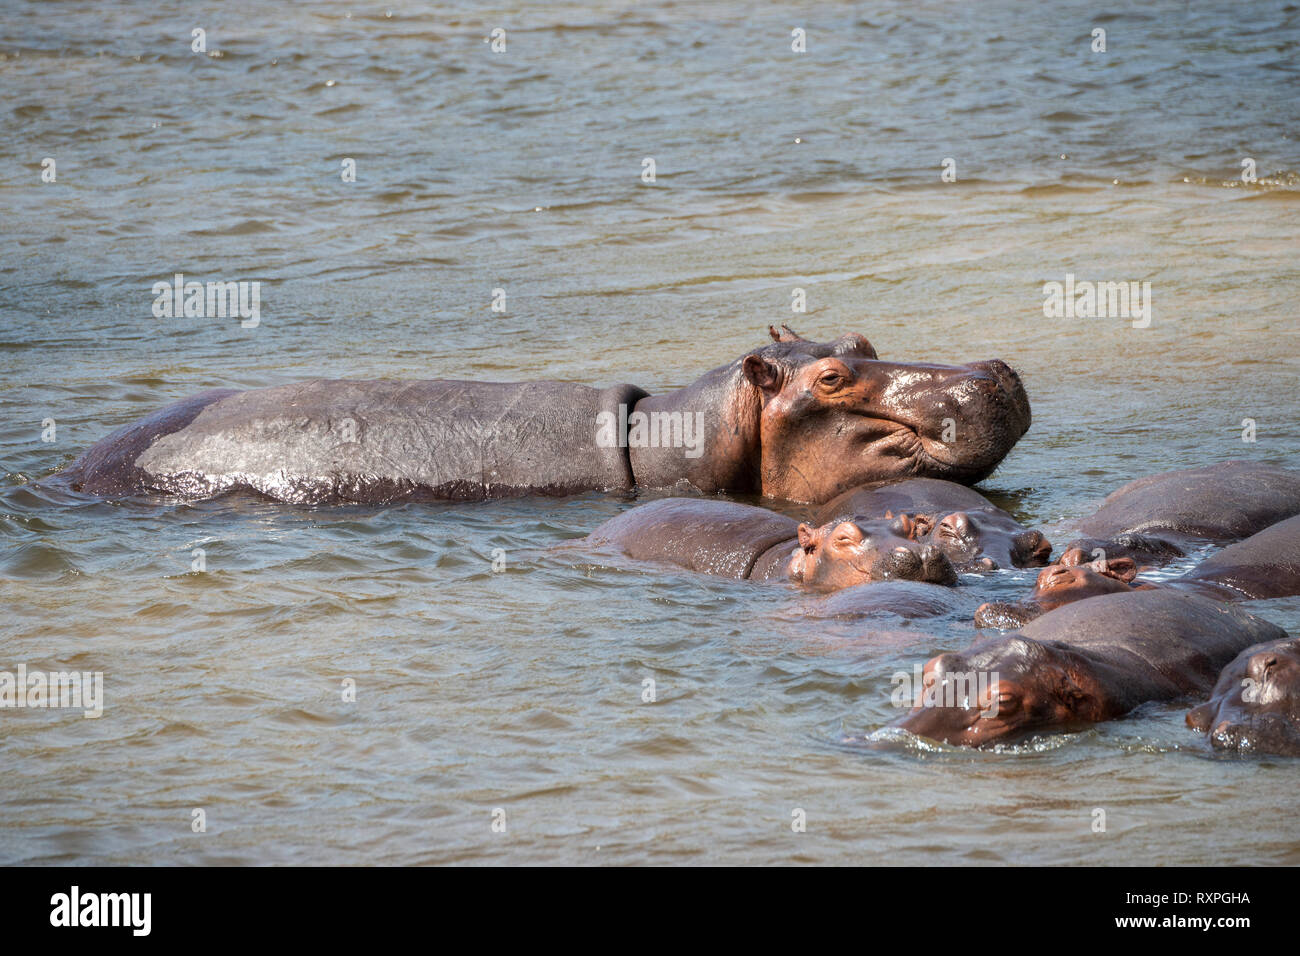 Hippopotame (Hippopotamus amphibius) se vautrer dans les bas-fonds de Victoria nil dans Murchison Falls National Park, au nord de l'Ouganda, l'Afrique de l'Est Banque D'Images